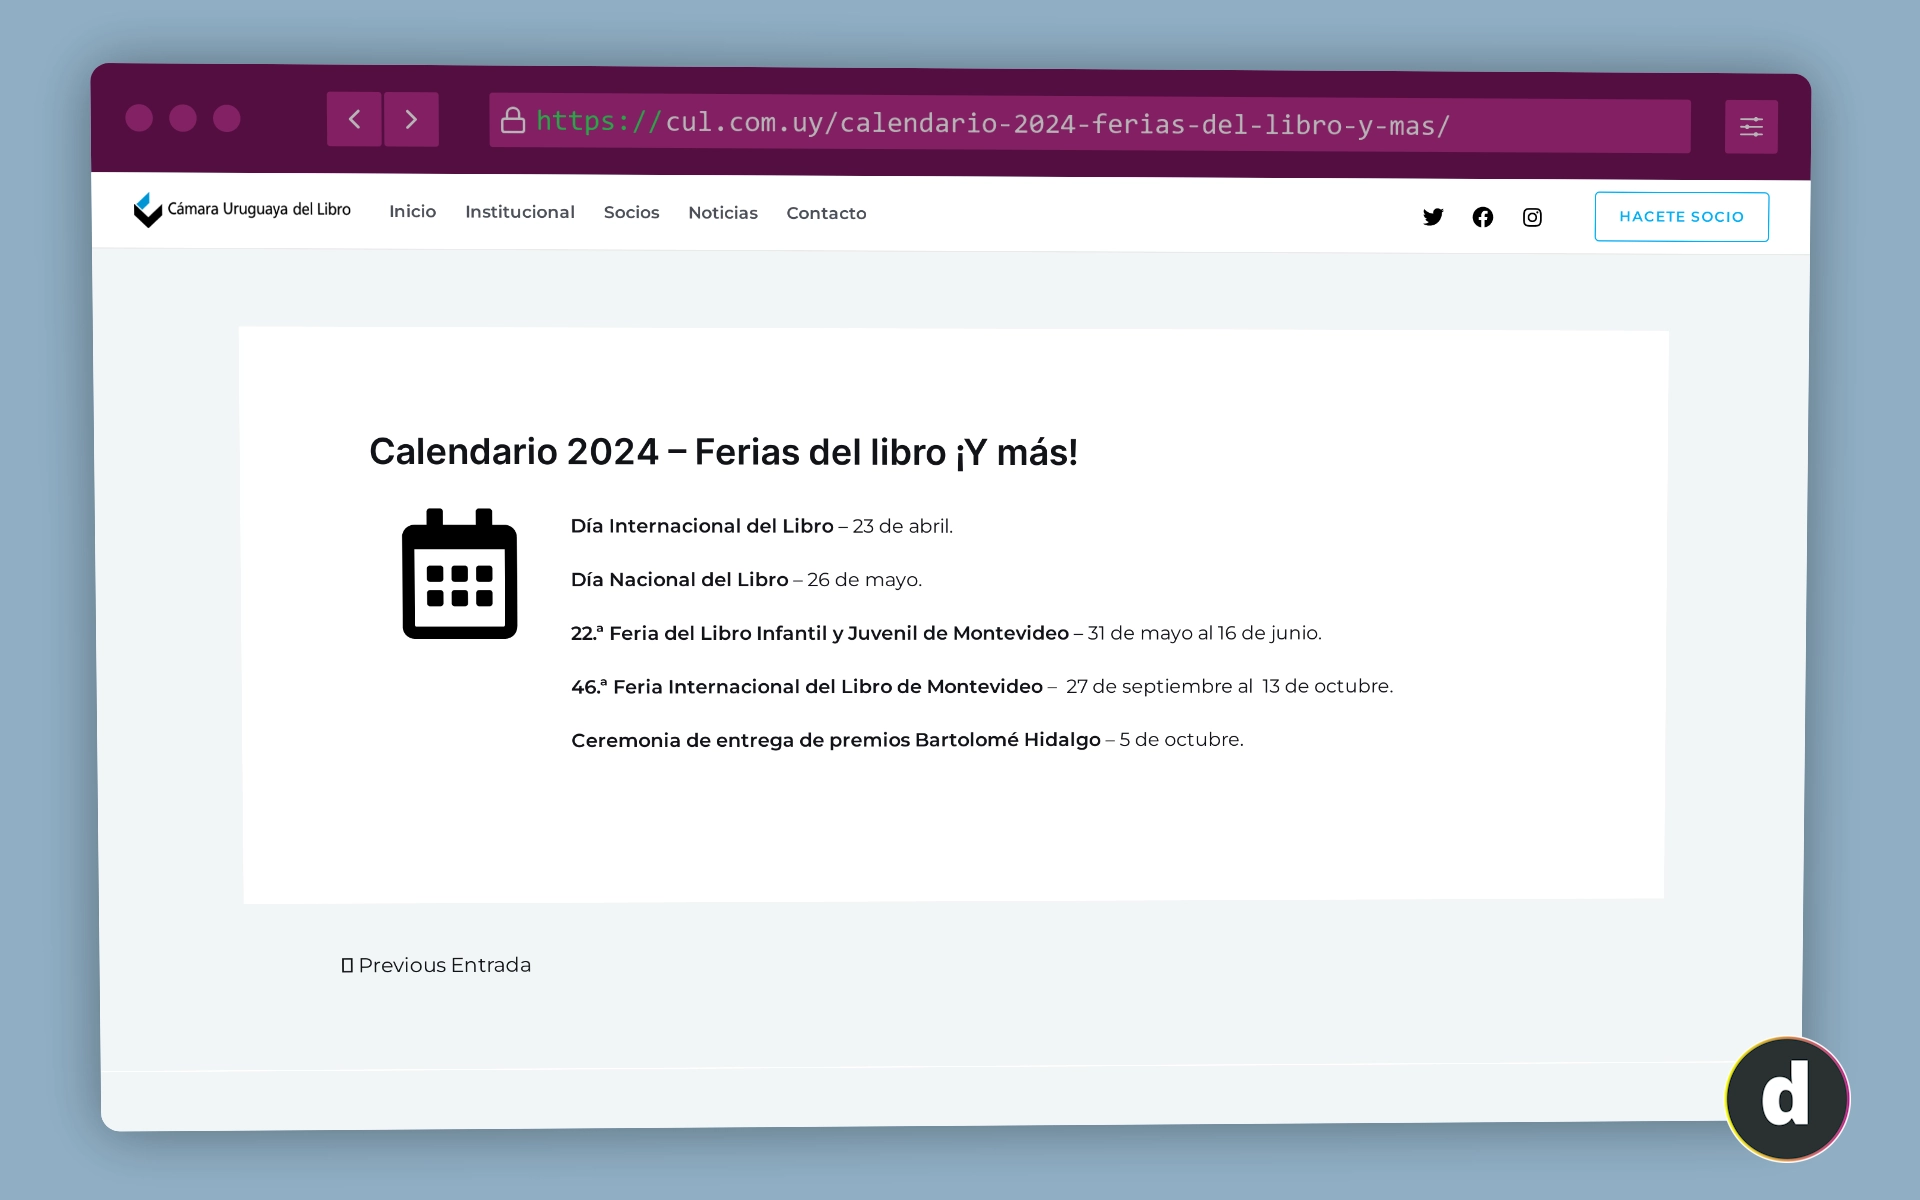 La Cámara Uruguaya del Libro publicó el calendario de actividades para el 2024.